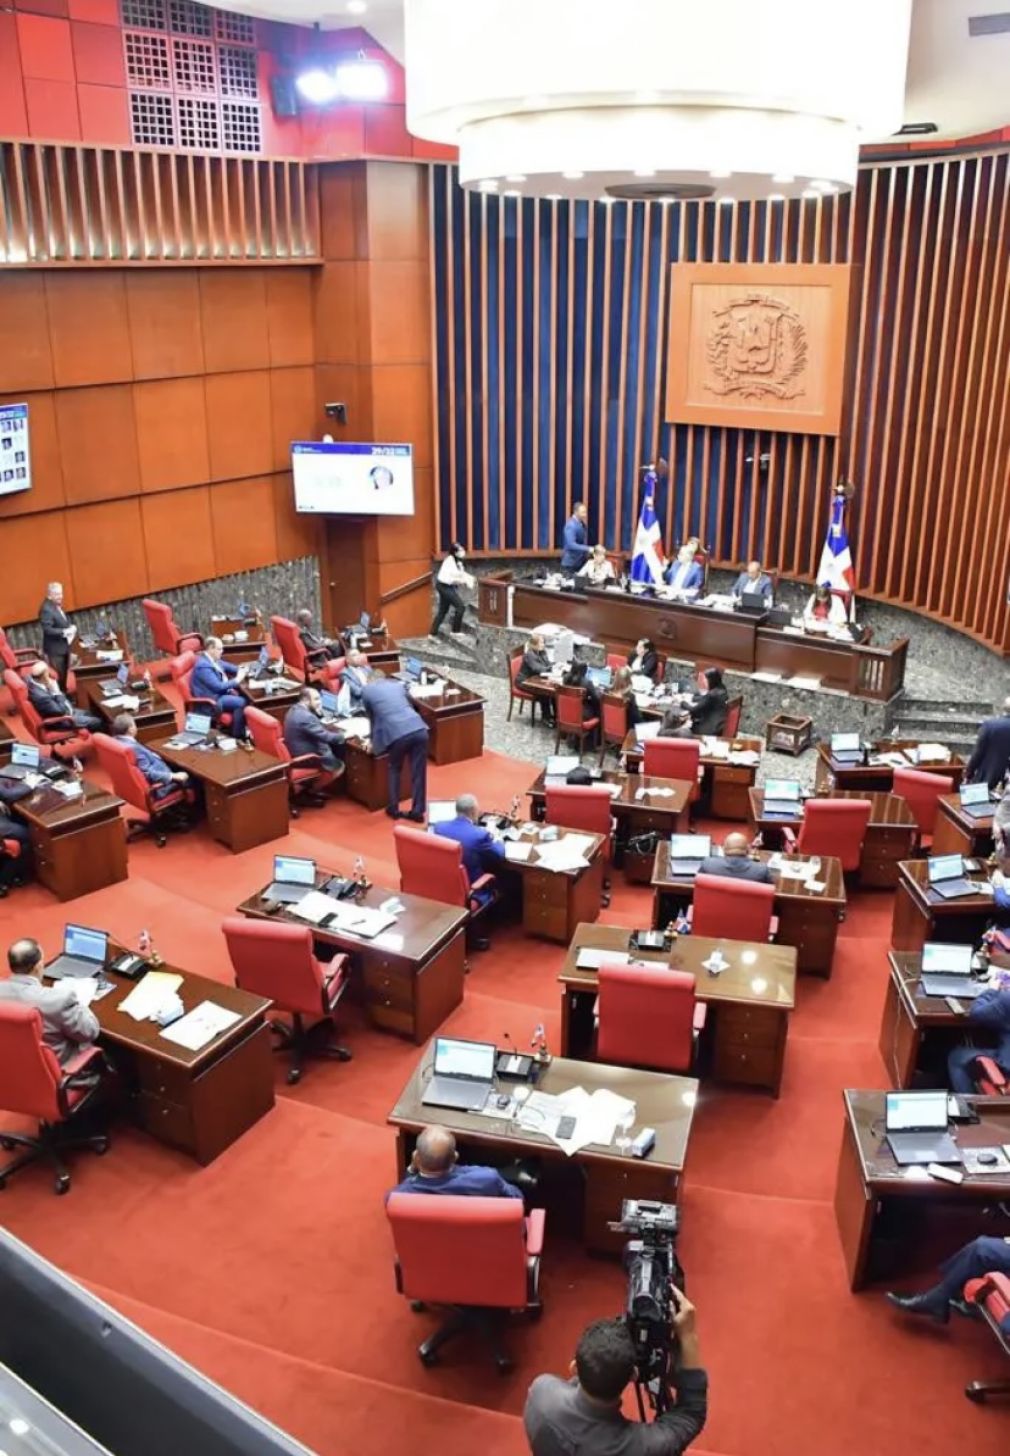 La pieza legislativa, presentada por los senadores Ramón Rogelio Genao y Virgilio Cedano, fue aprobada con una votación de 23 de 27 senadores presentes en la sesión del Pleno del miércoles.